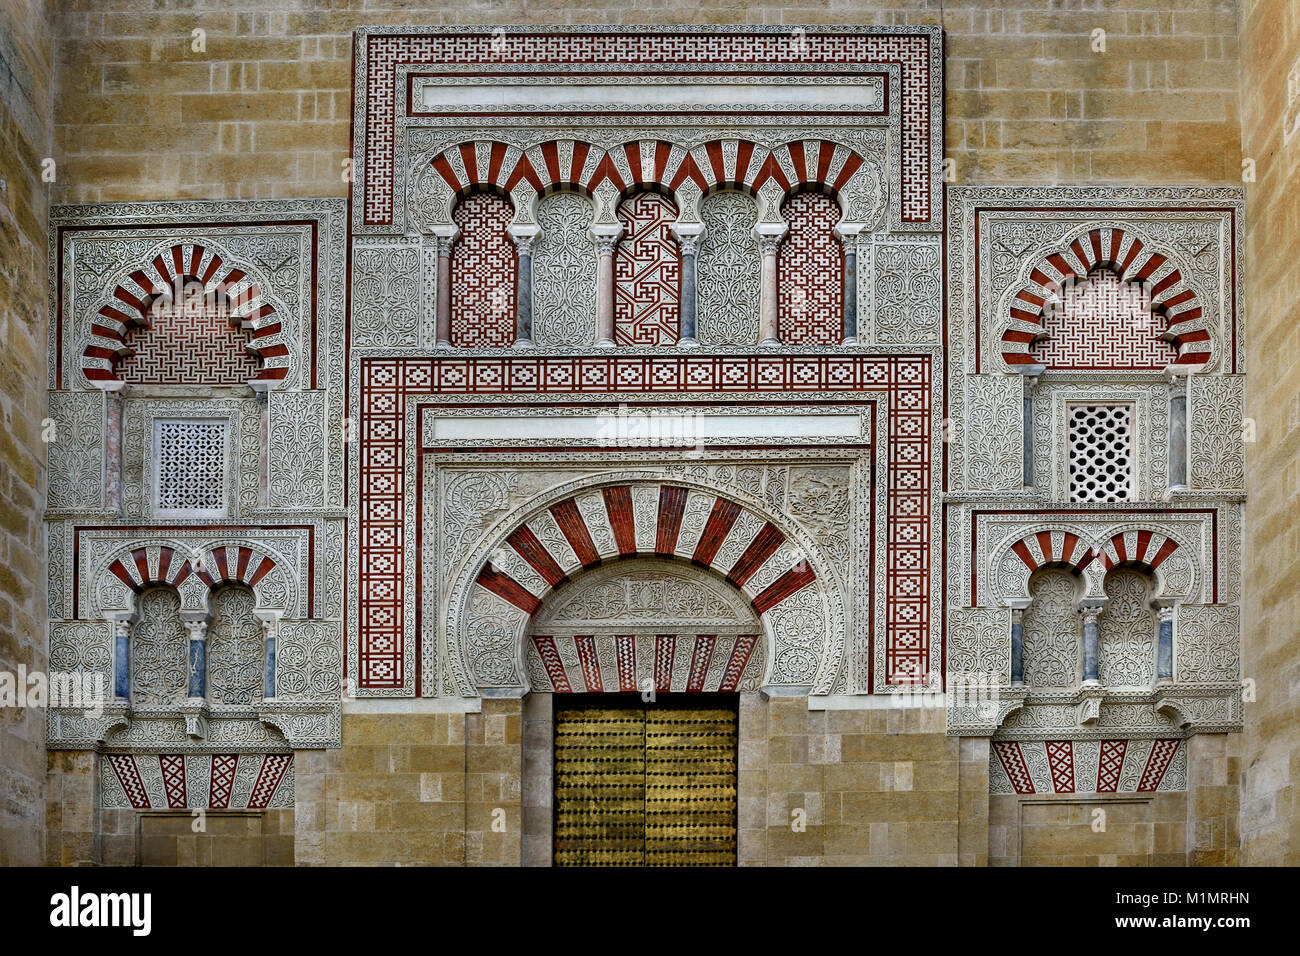 Cordoba - Mesquita, Kathedrale, eine mittelalterliche islamische Moschee in einem römisch-katholischen Christen, Andalusien (Spanien, Spanisch umgewandelt Stockfoto